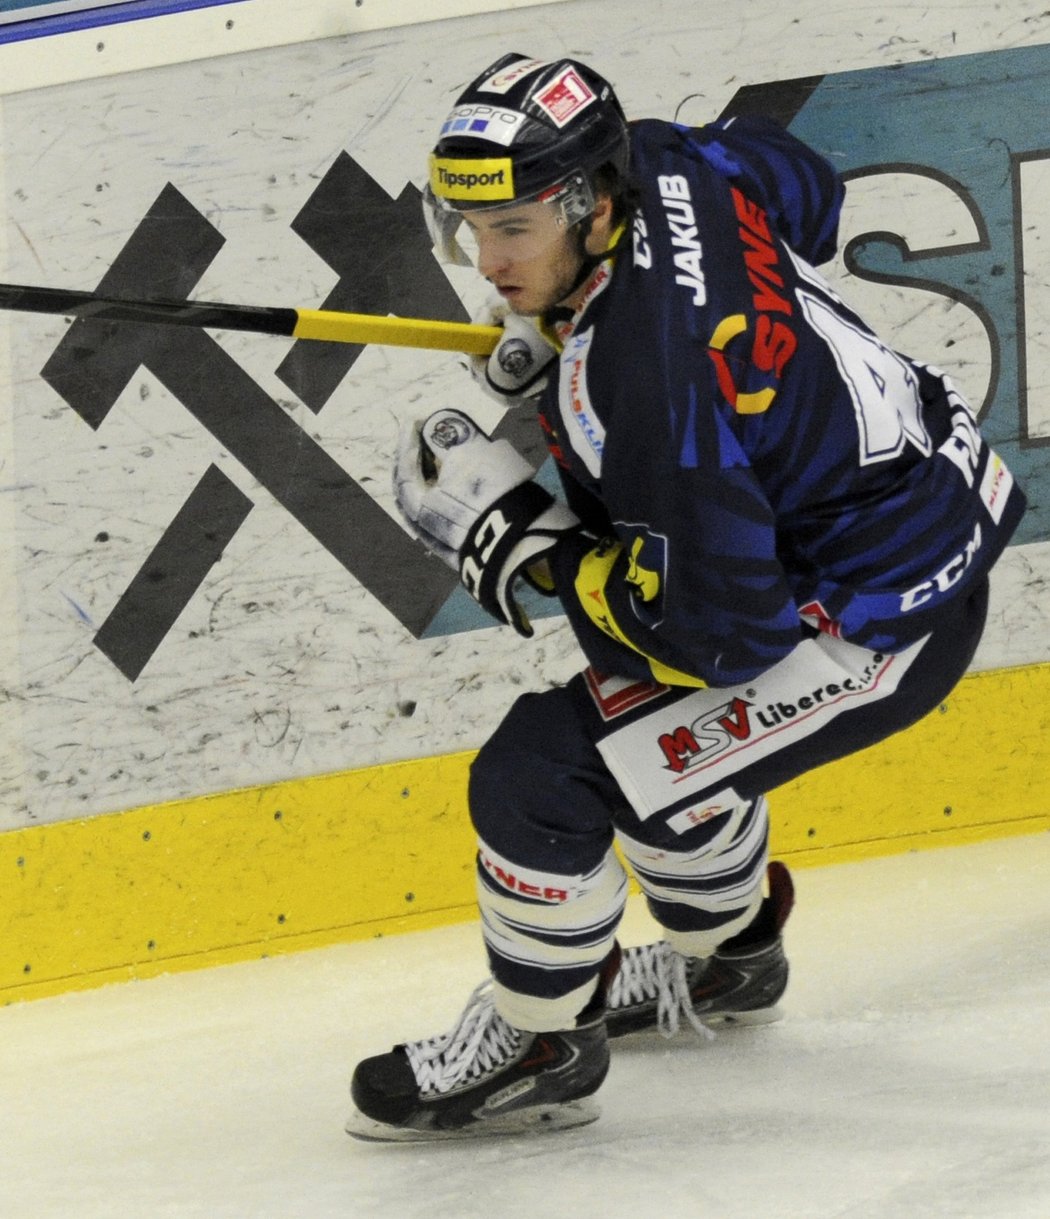 Liberecký hokejista Filippi se snaží udržet vedení svému týmu